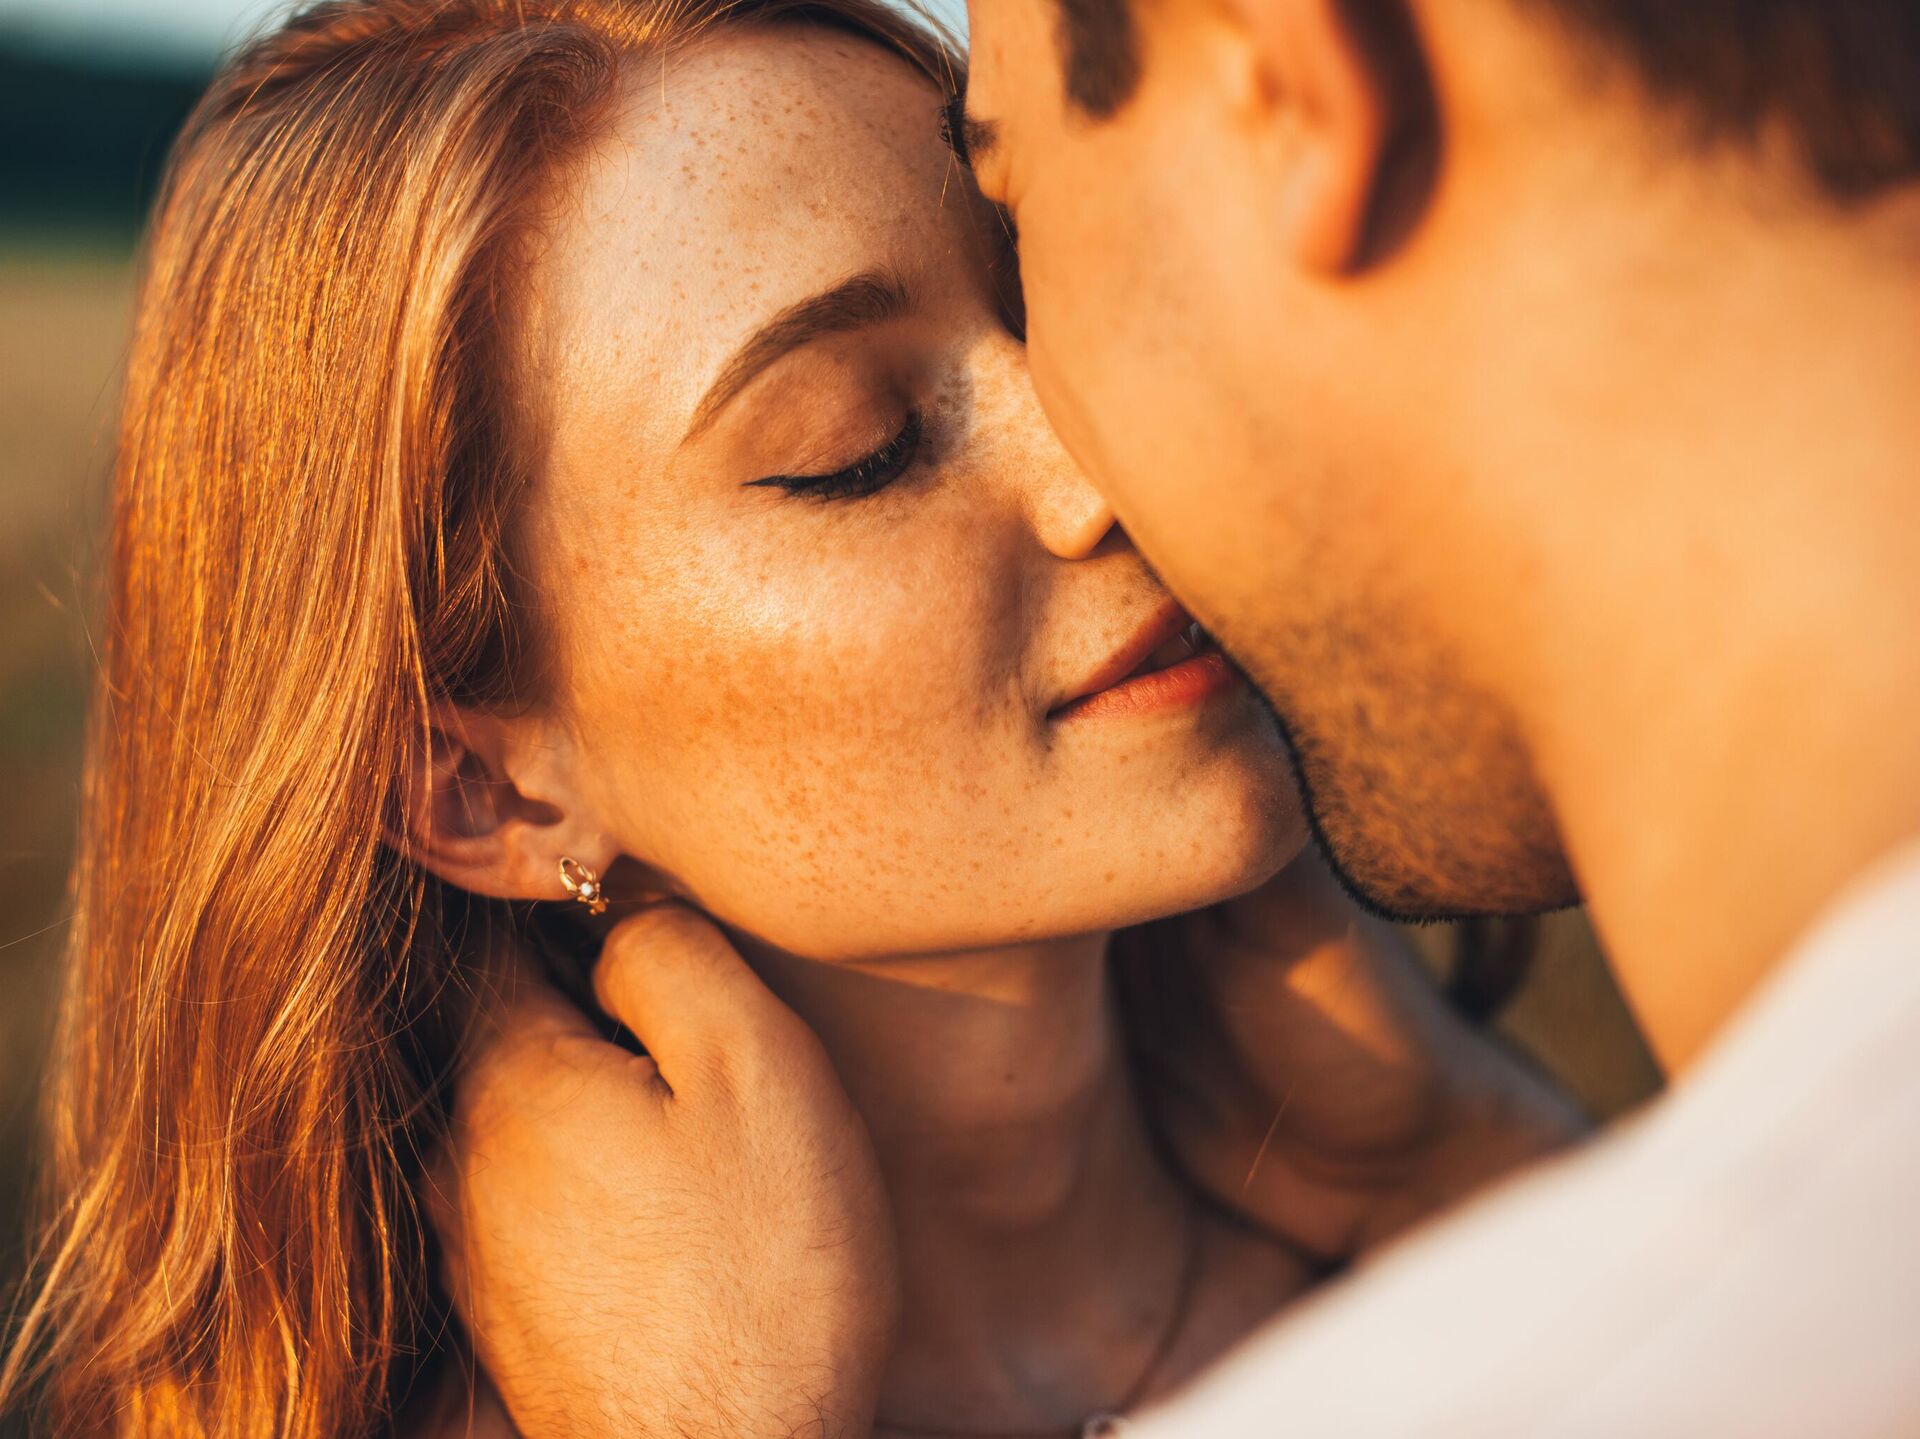 Секс романтический с поцелуем богатыми людьми (52 фото)